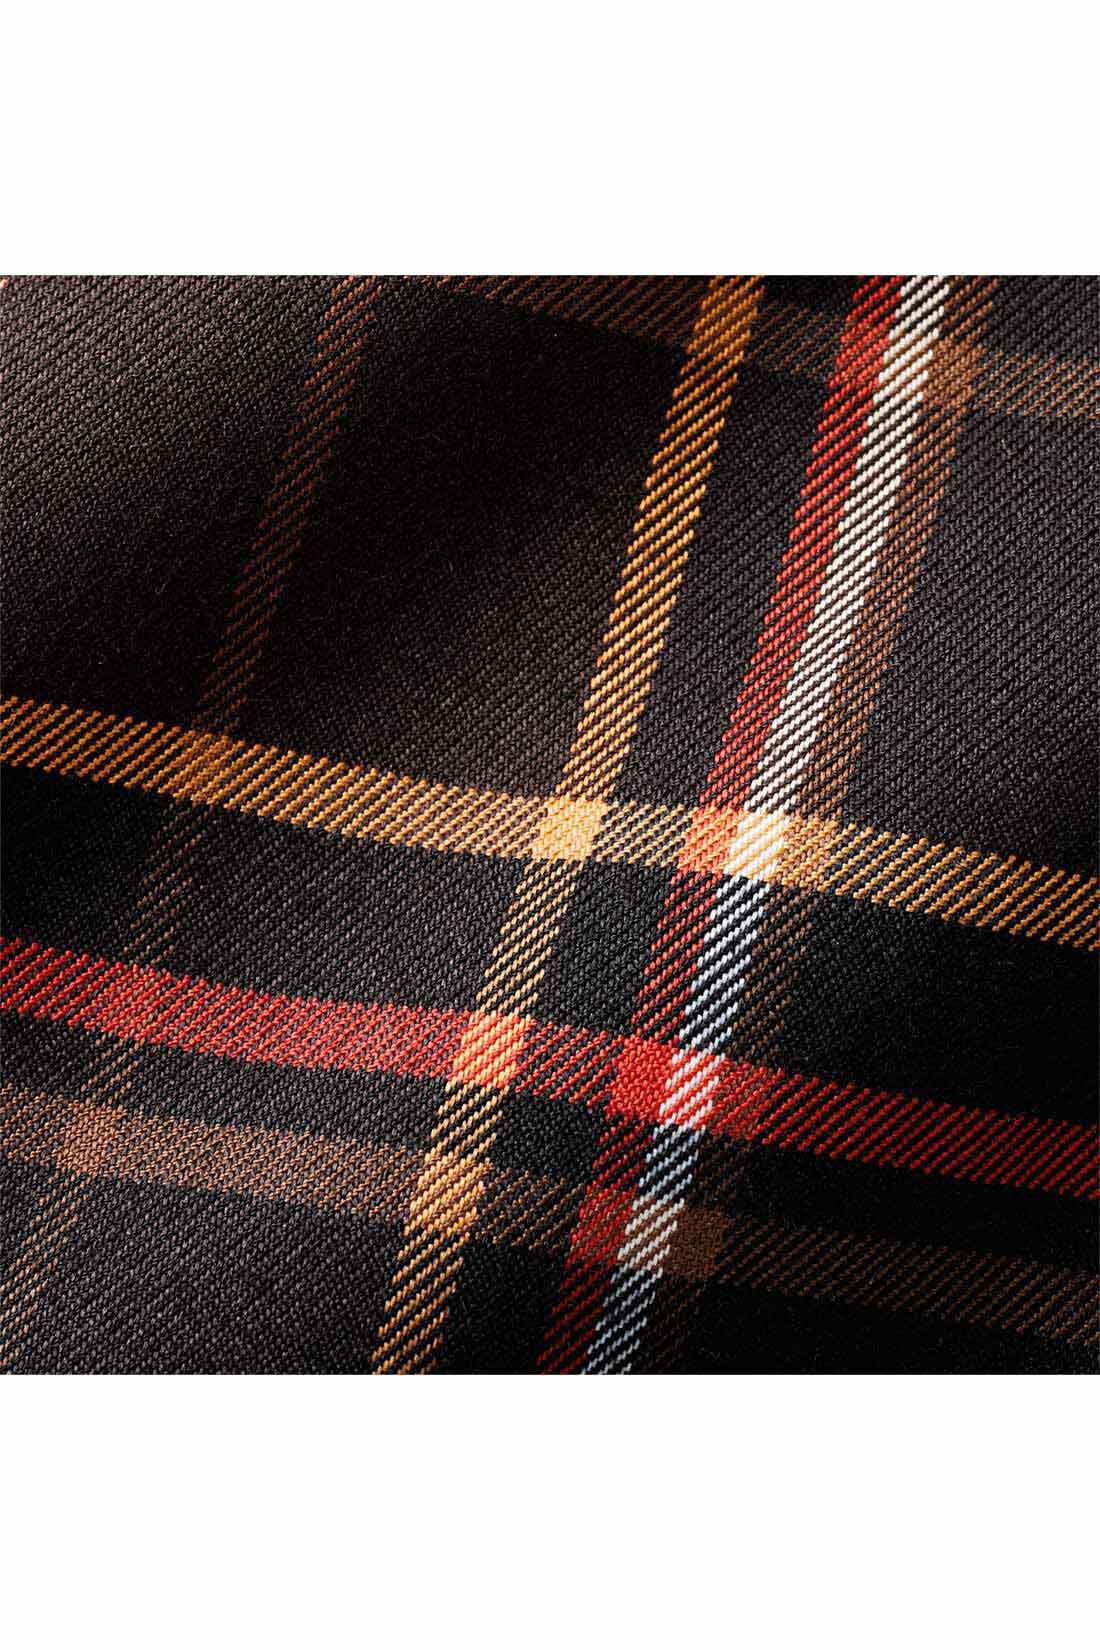 IEDIT[イディット]　大人チェック柄のすそ切り替えマーメイドスカート〈ブラック〉|秋口から着やすいハリ感のある布はく素材。